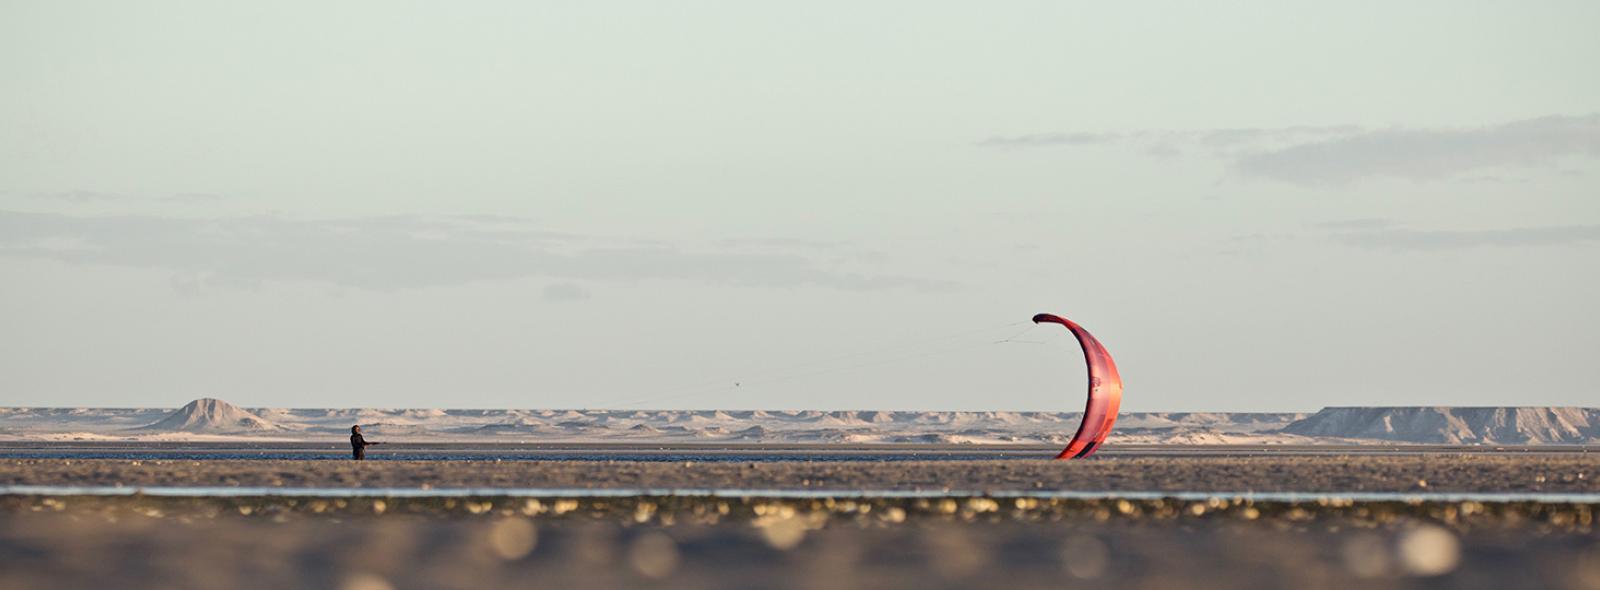 Spot de kitesurf à Dakhla Lassarga sur un plan d'eau flat autour des dunes de sables du désert Sahara avec une voile Duotone